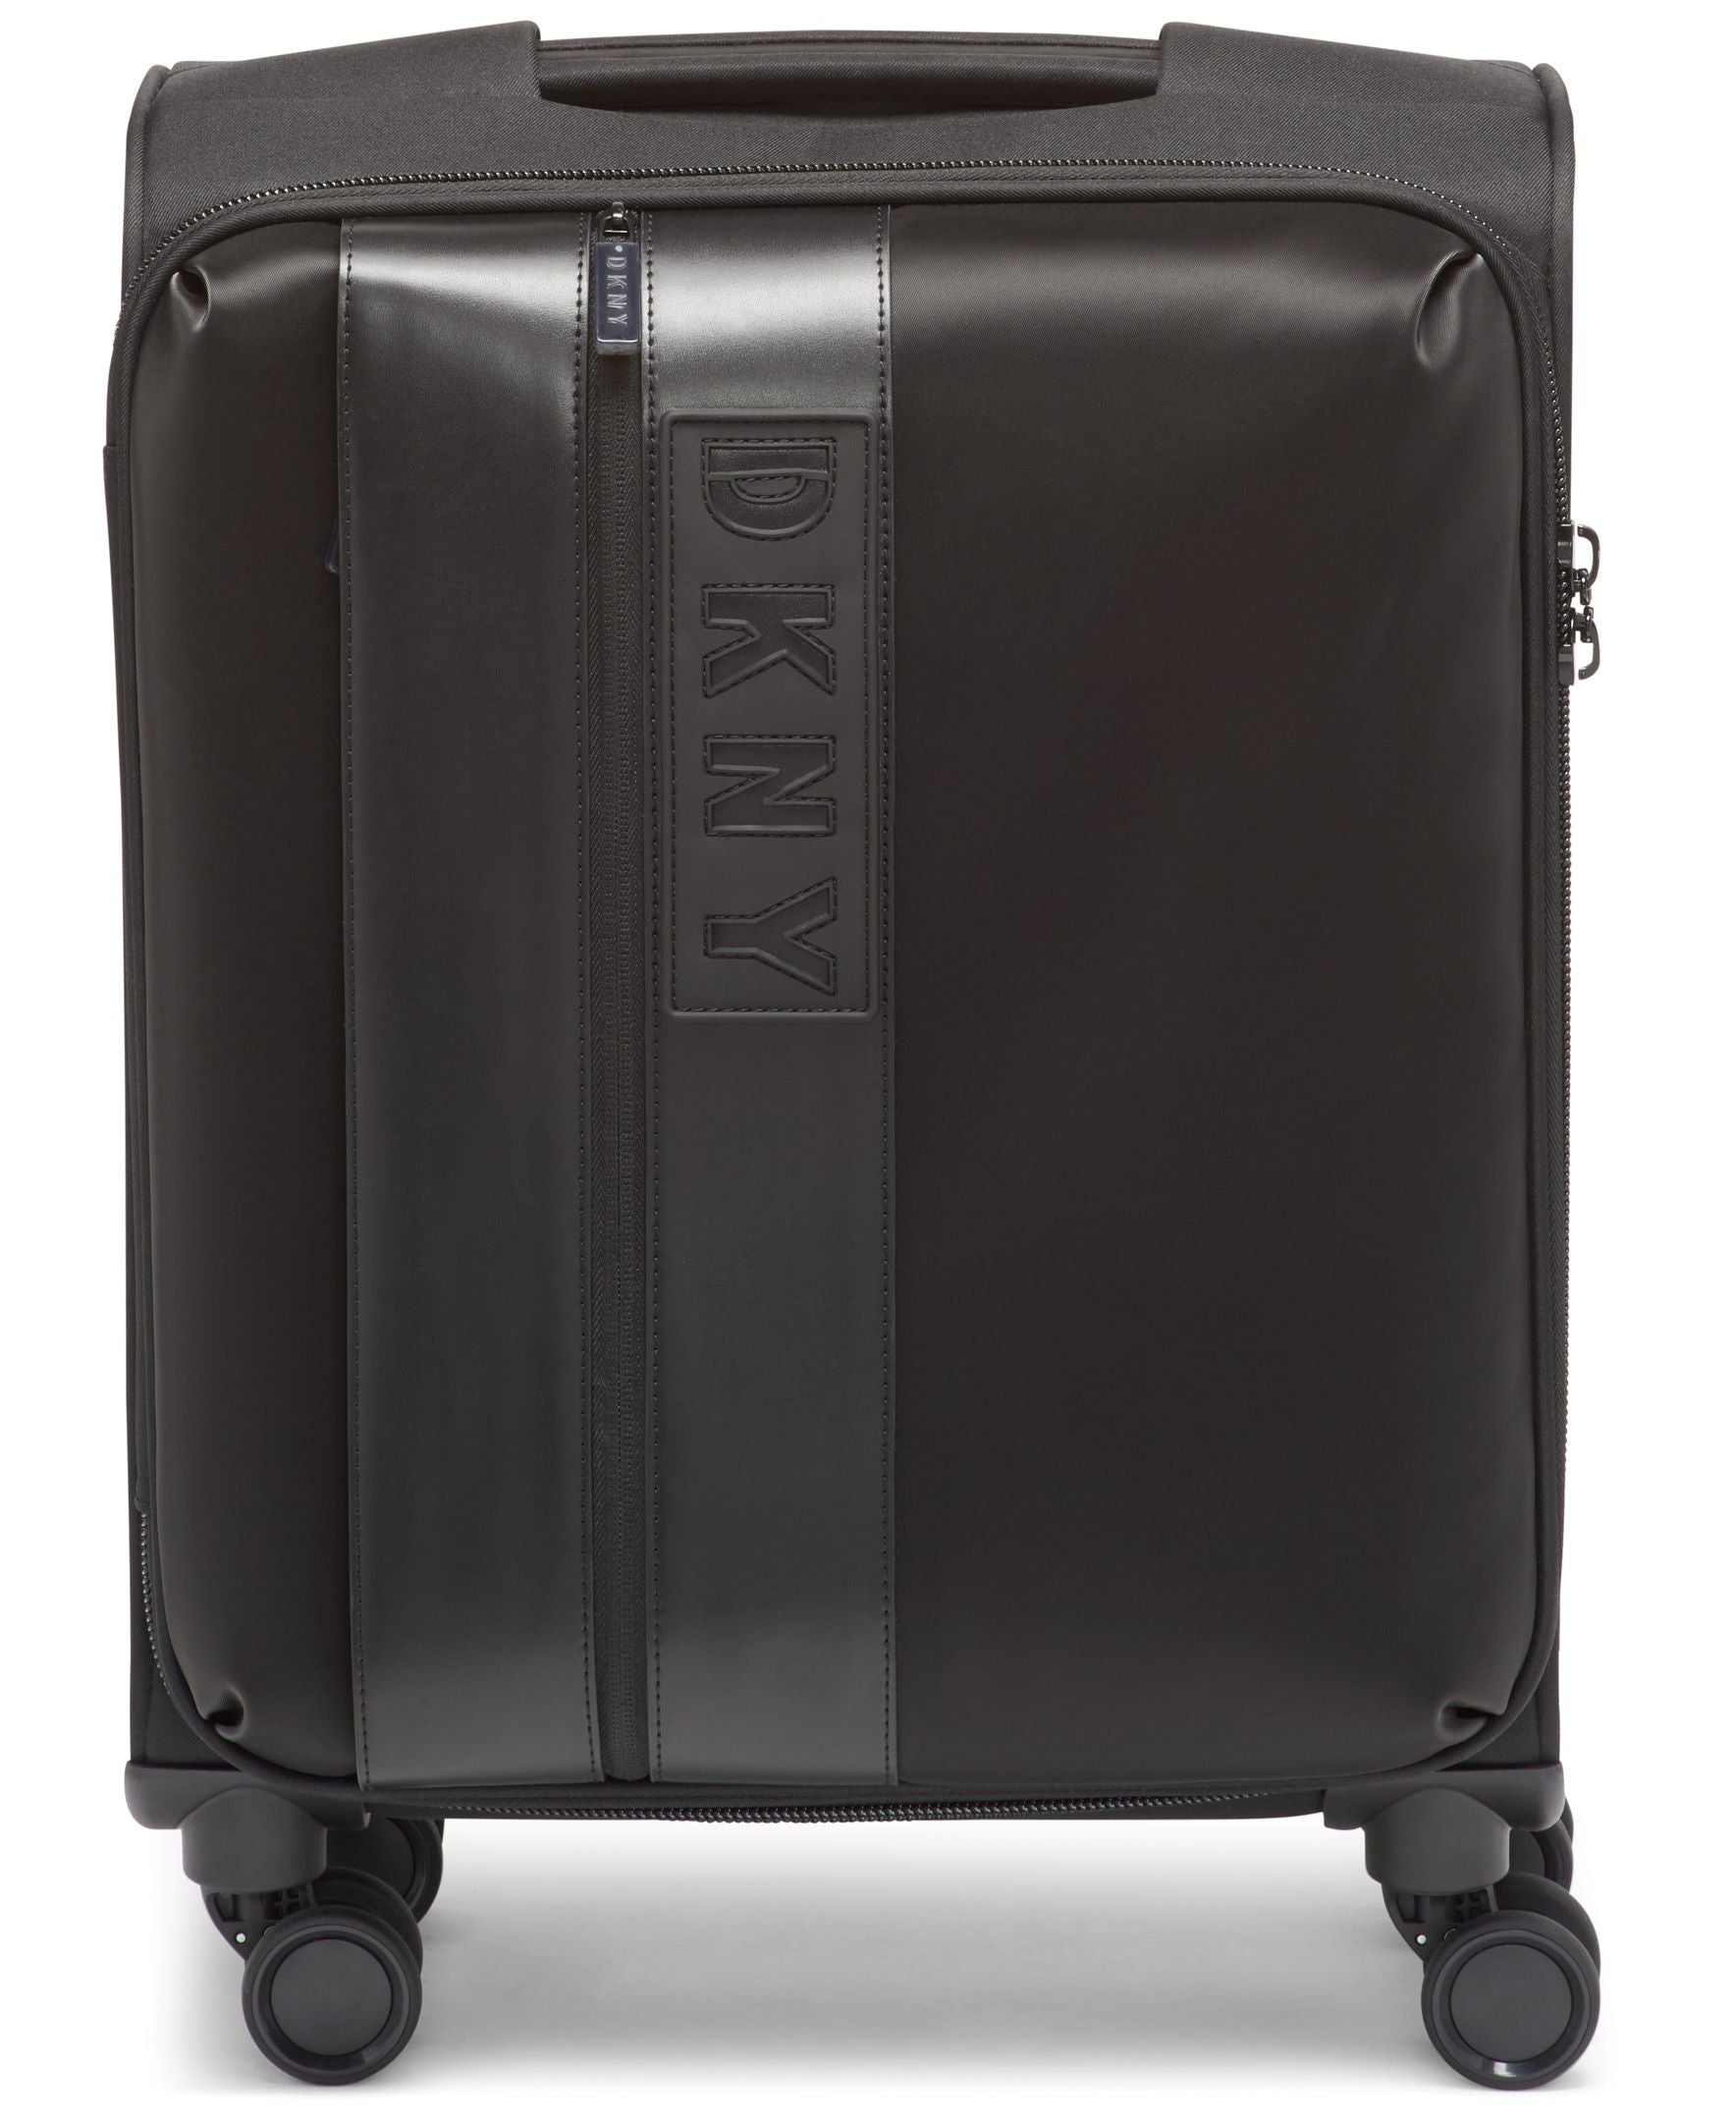 ✮✮בלעדי בישראל✮✮ מזוודה בד קטנה עליה למטוס 20" אופנתית מבית מעצבת העל Donna Karan DKNY דגם INSTINCT 408